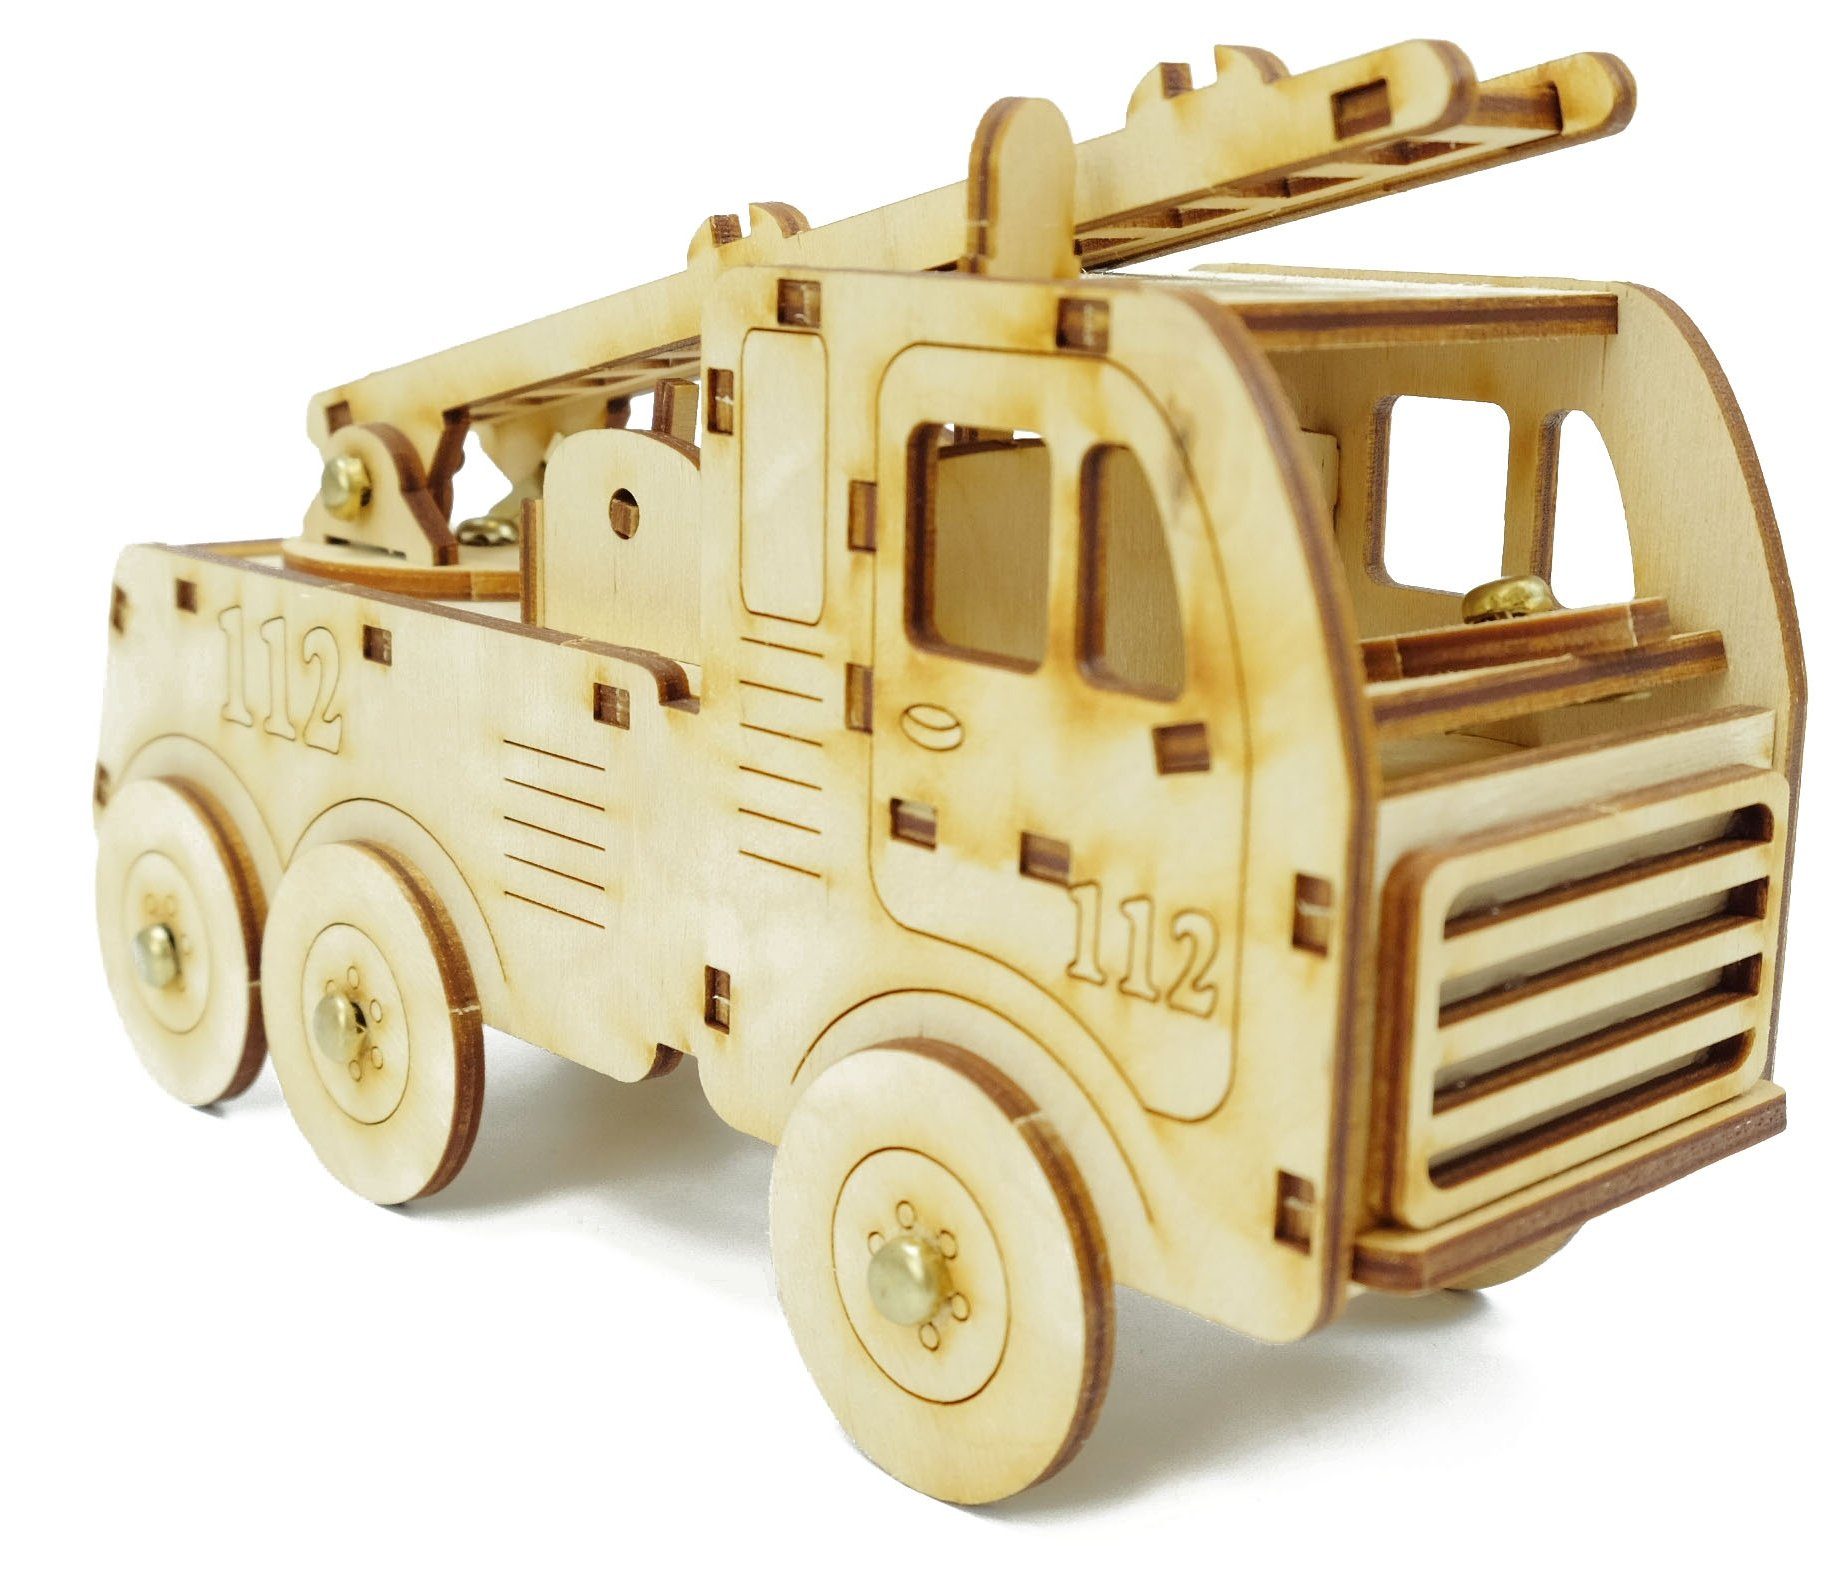 DeColibri Spielzeug-Feuerwehr Bastelset Basteln Kinder Erwachsene Holz Feuerwehr, (Bastelset zum Bemalen und Gestalten), Made in Germany